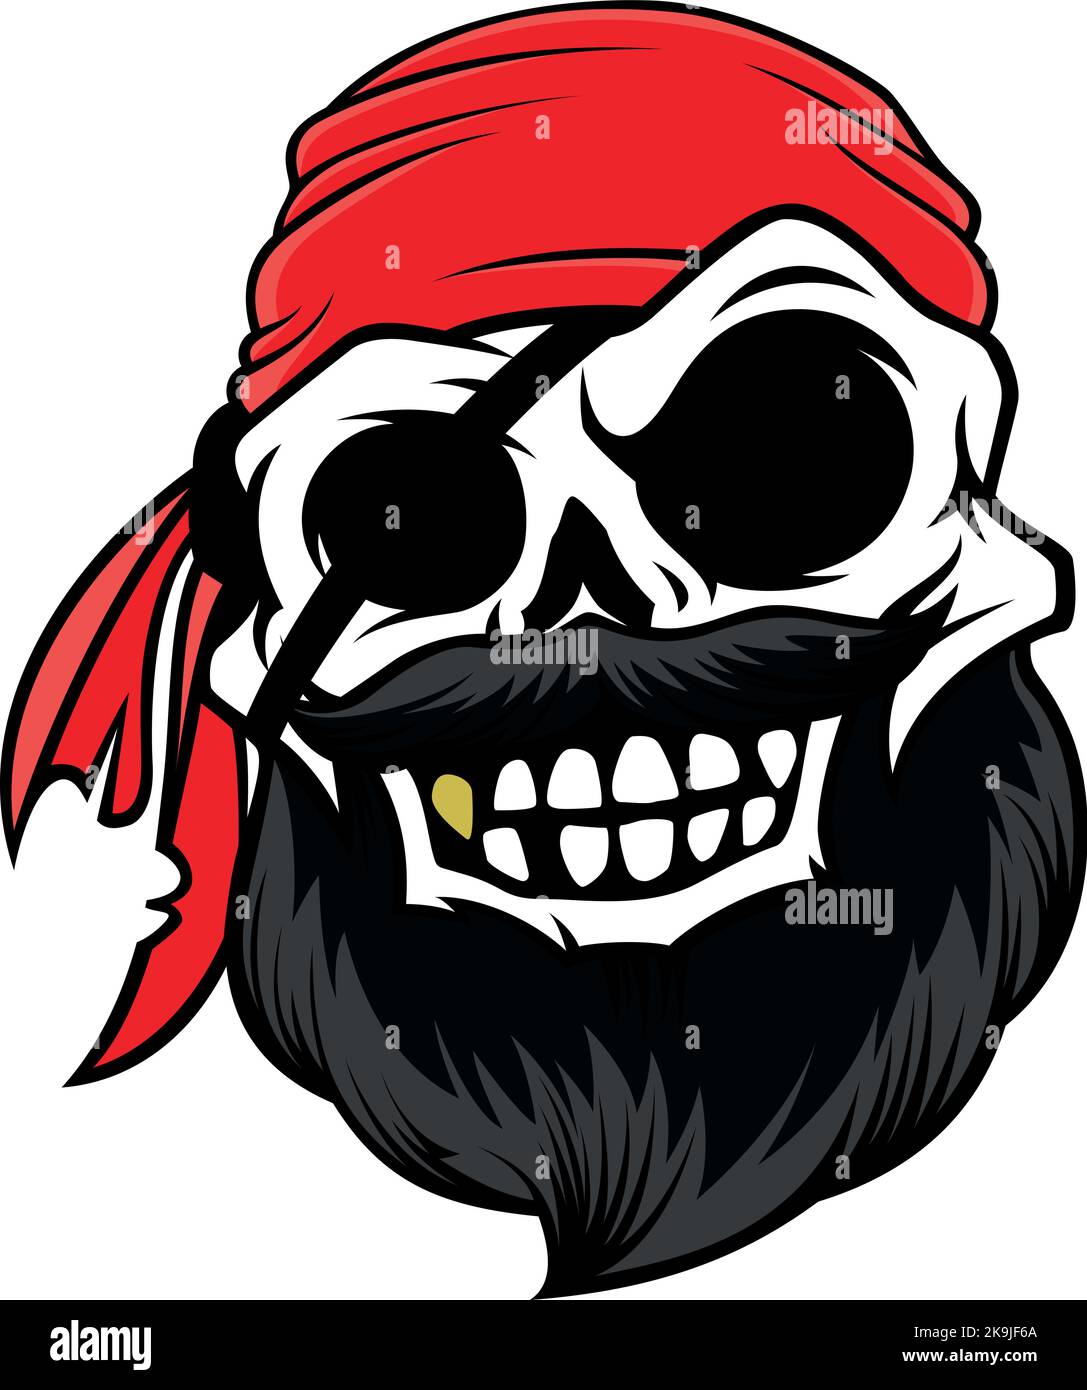 Piratenschädel mit Bart, Bandana, Augenklappe und Lächeln, um seinen goldenen Zahn zu zeigen Stock Vektor